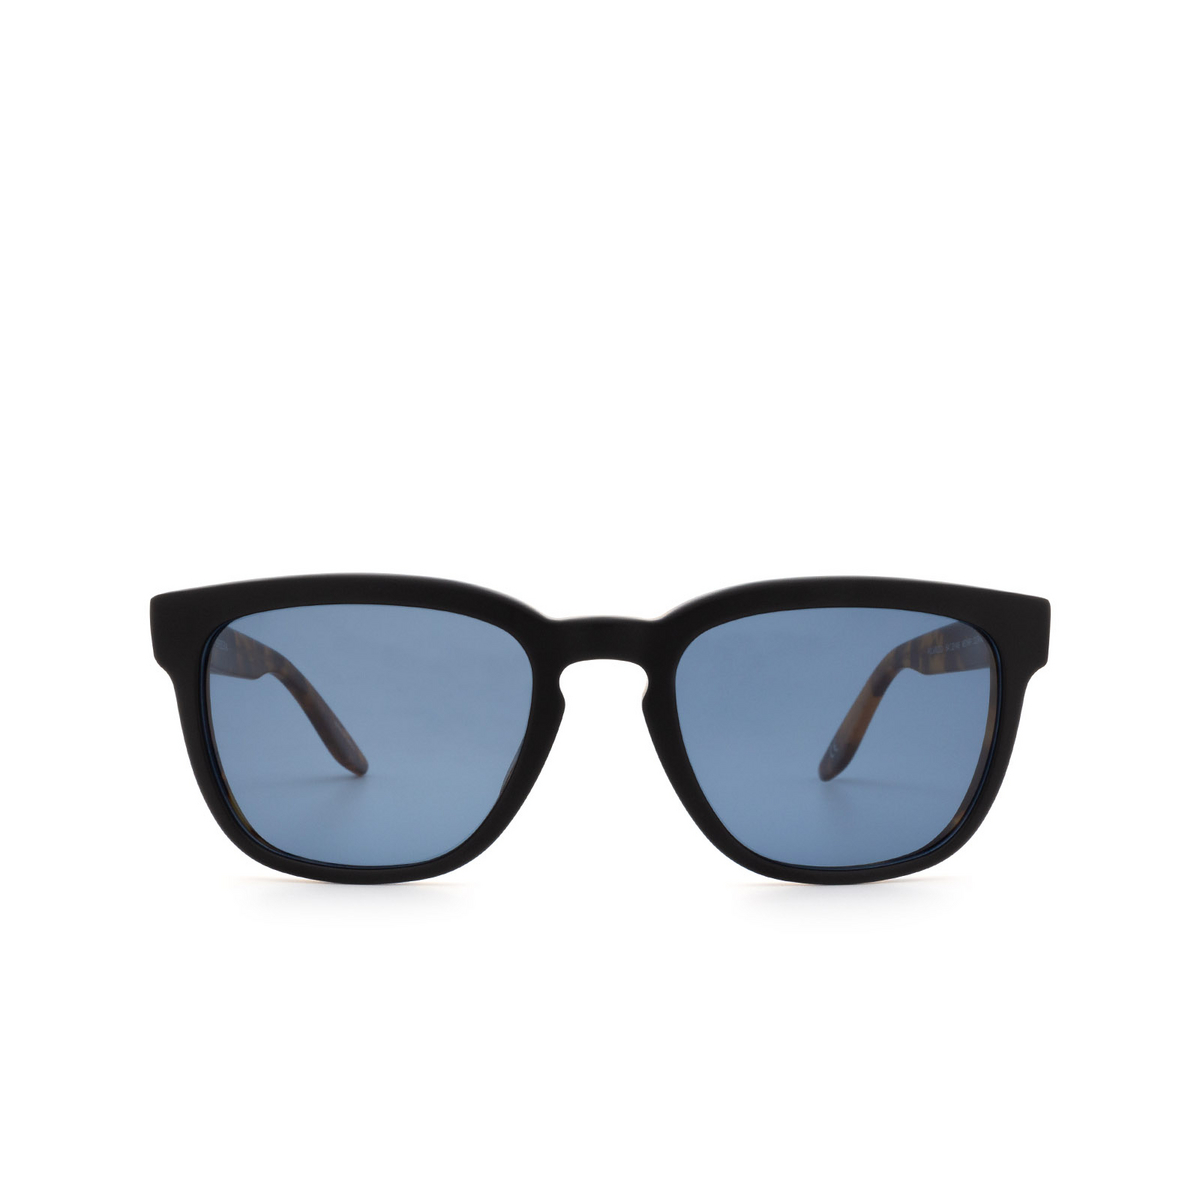 Barton Perreira® Square Sunglasses: Coltrane BP0013 color Matte Black & Tortoise 1HZ - front view.